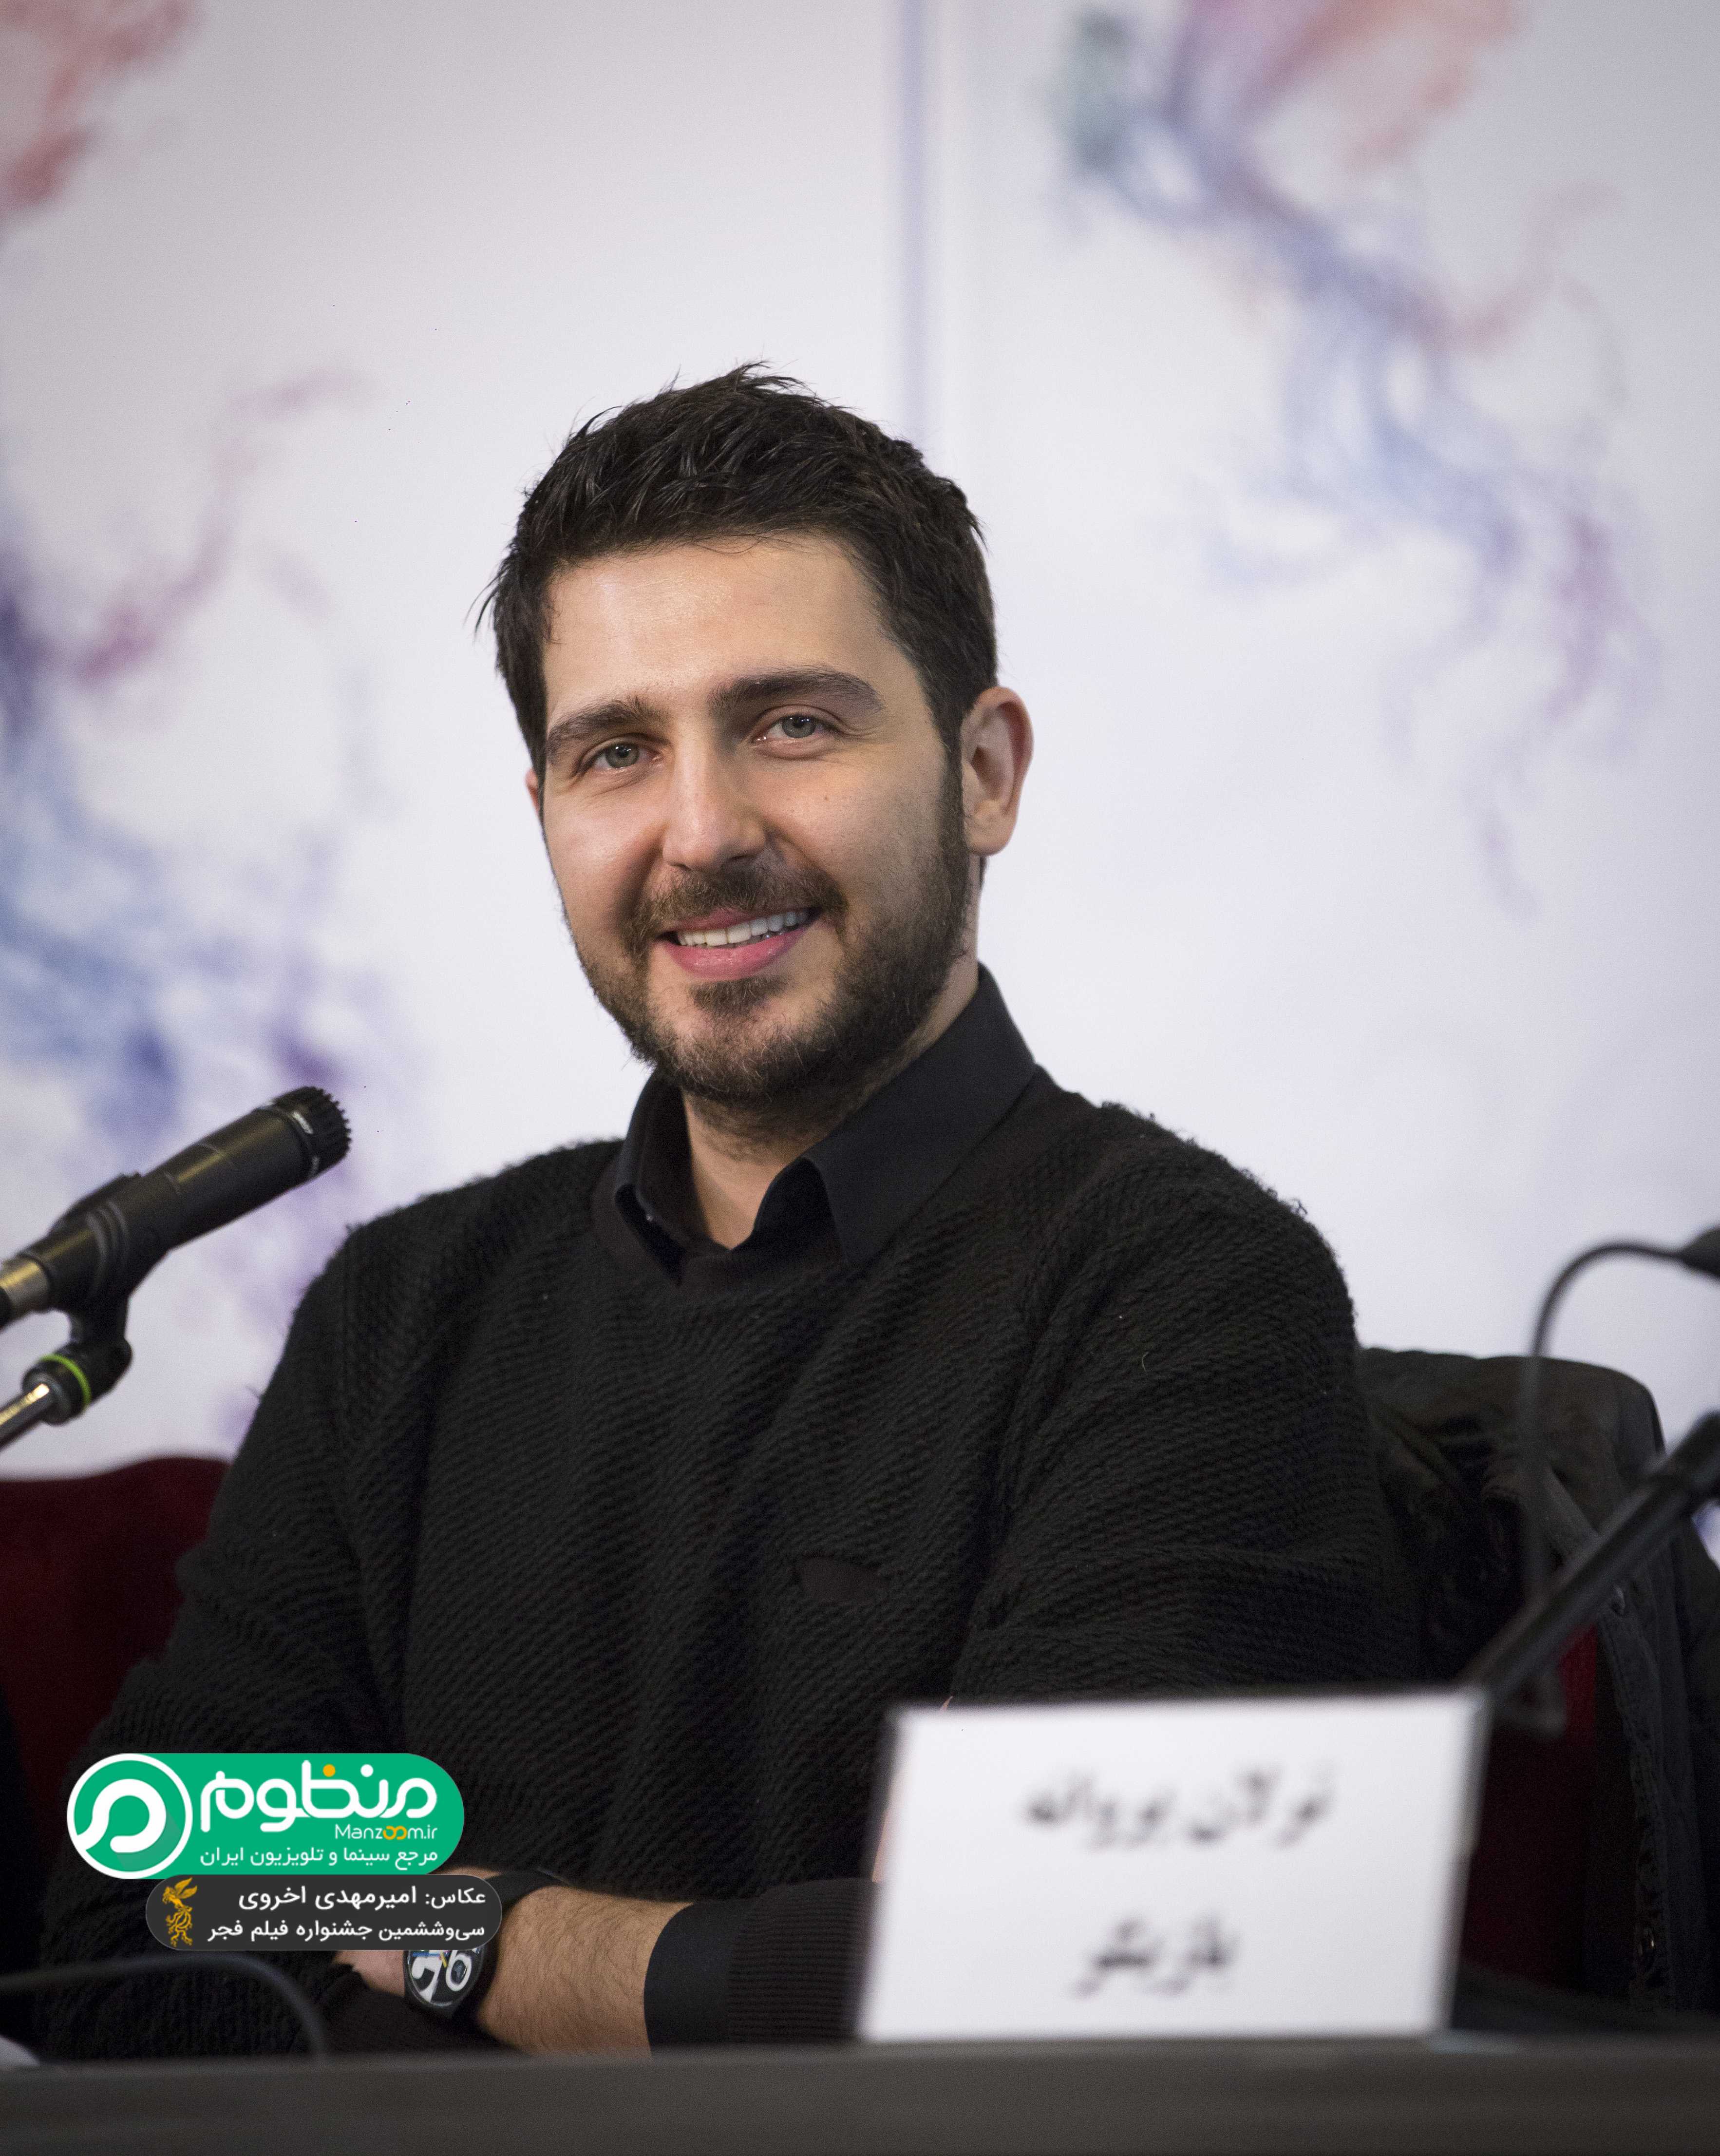 نشست خبری فیلم سینمایی جاده قدیم با حضور محمدرضا غفاری